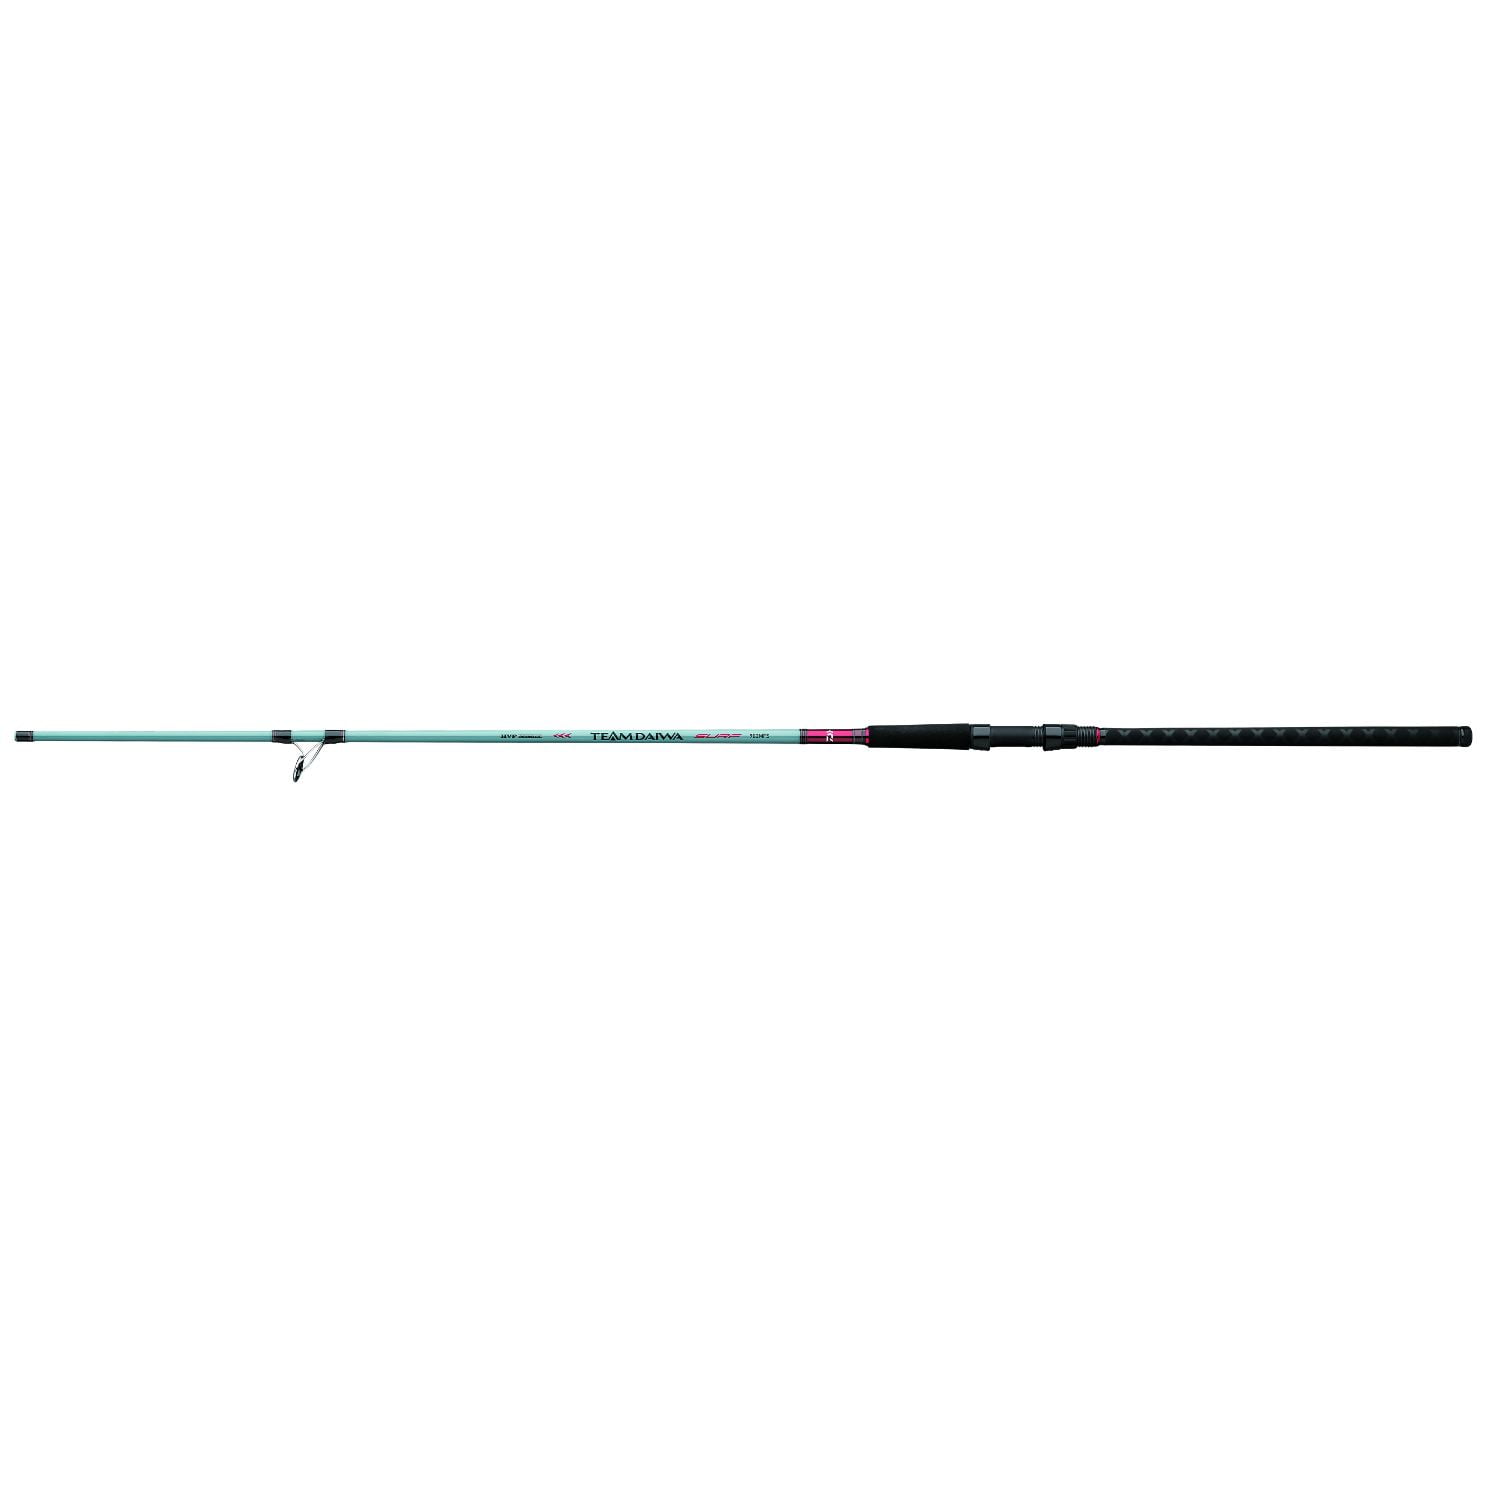 Complete Carbo  Starter Fishing Tackle Set & Tackle Rod Reel Net 10ft 